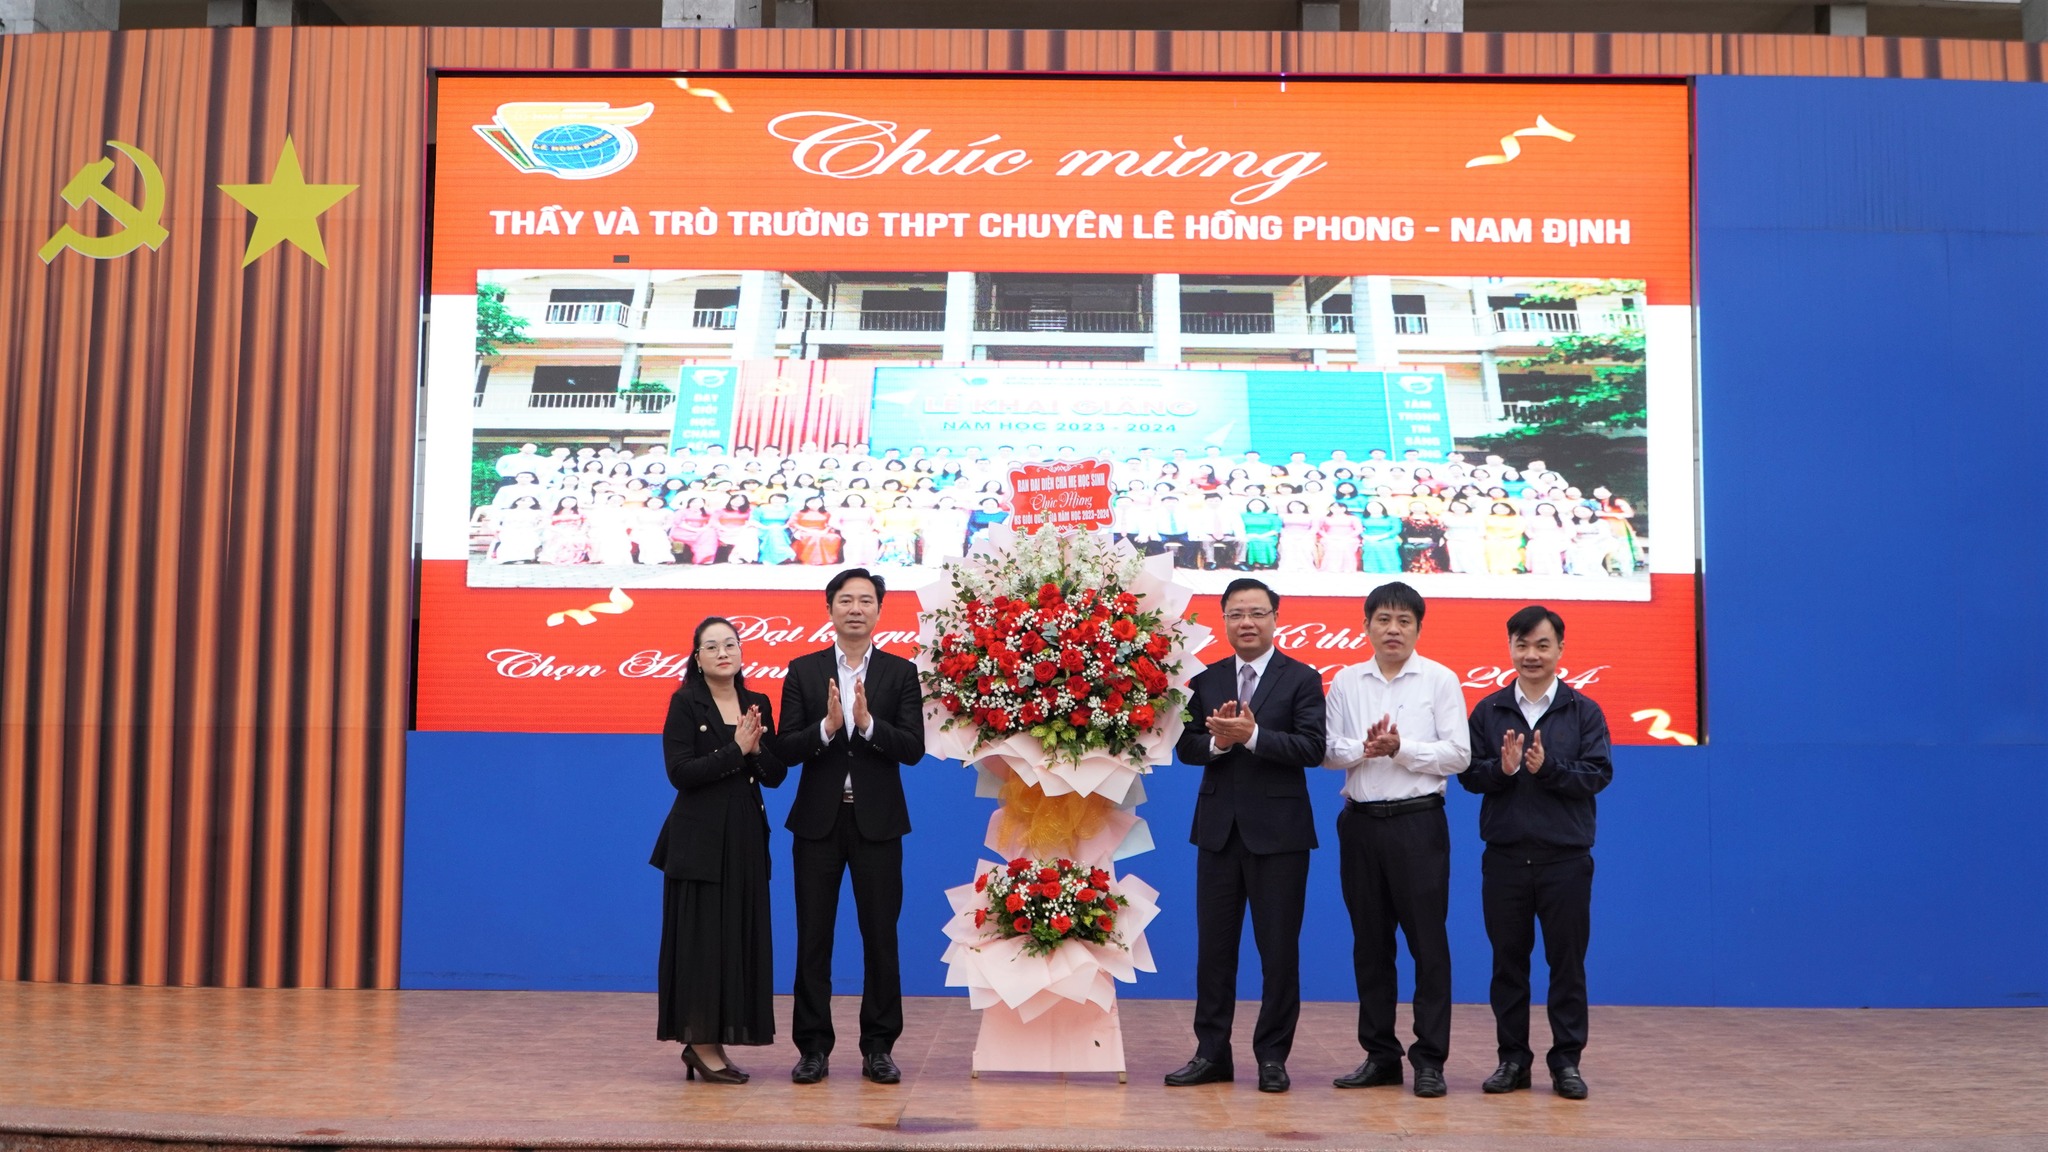 Trường THPT chuyên Lê Hồng Phong trao thưởng cho học sinh đạt giải trong các kì thi